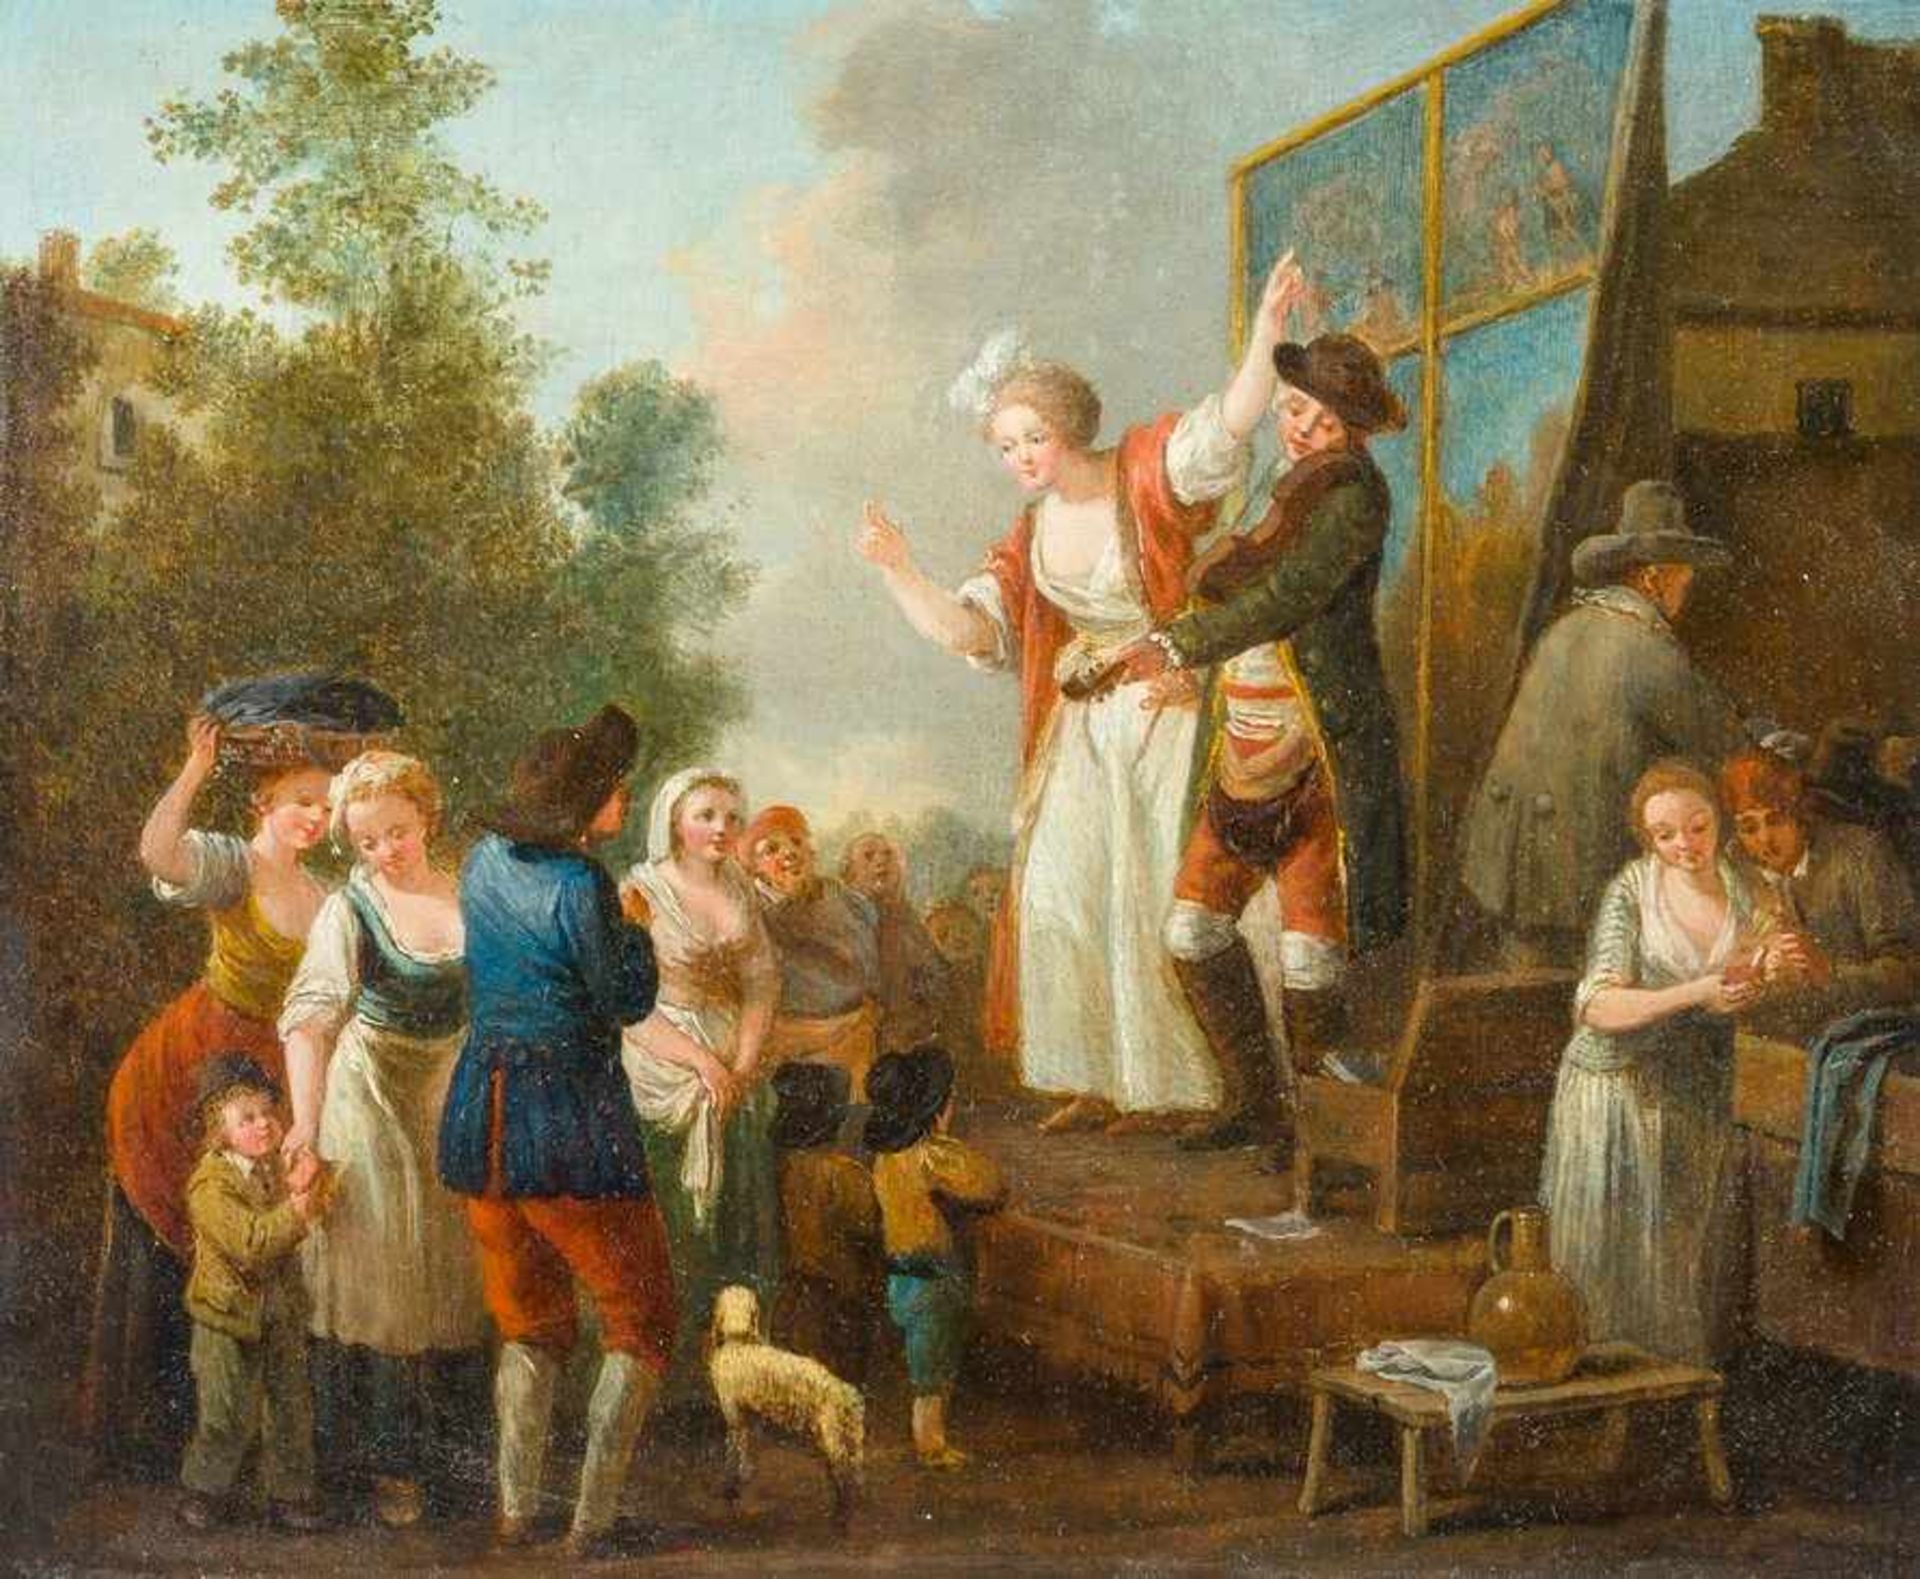 Deutscher Genremaler Um 1770 Bänkelsängerin und Geigenspieler. Um die Bühne herum lebhafte Szene auf